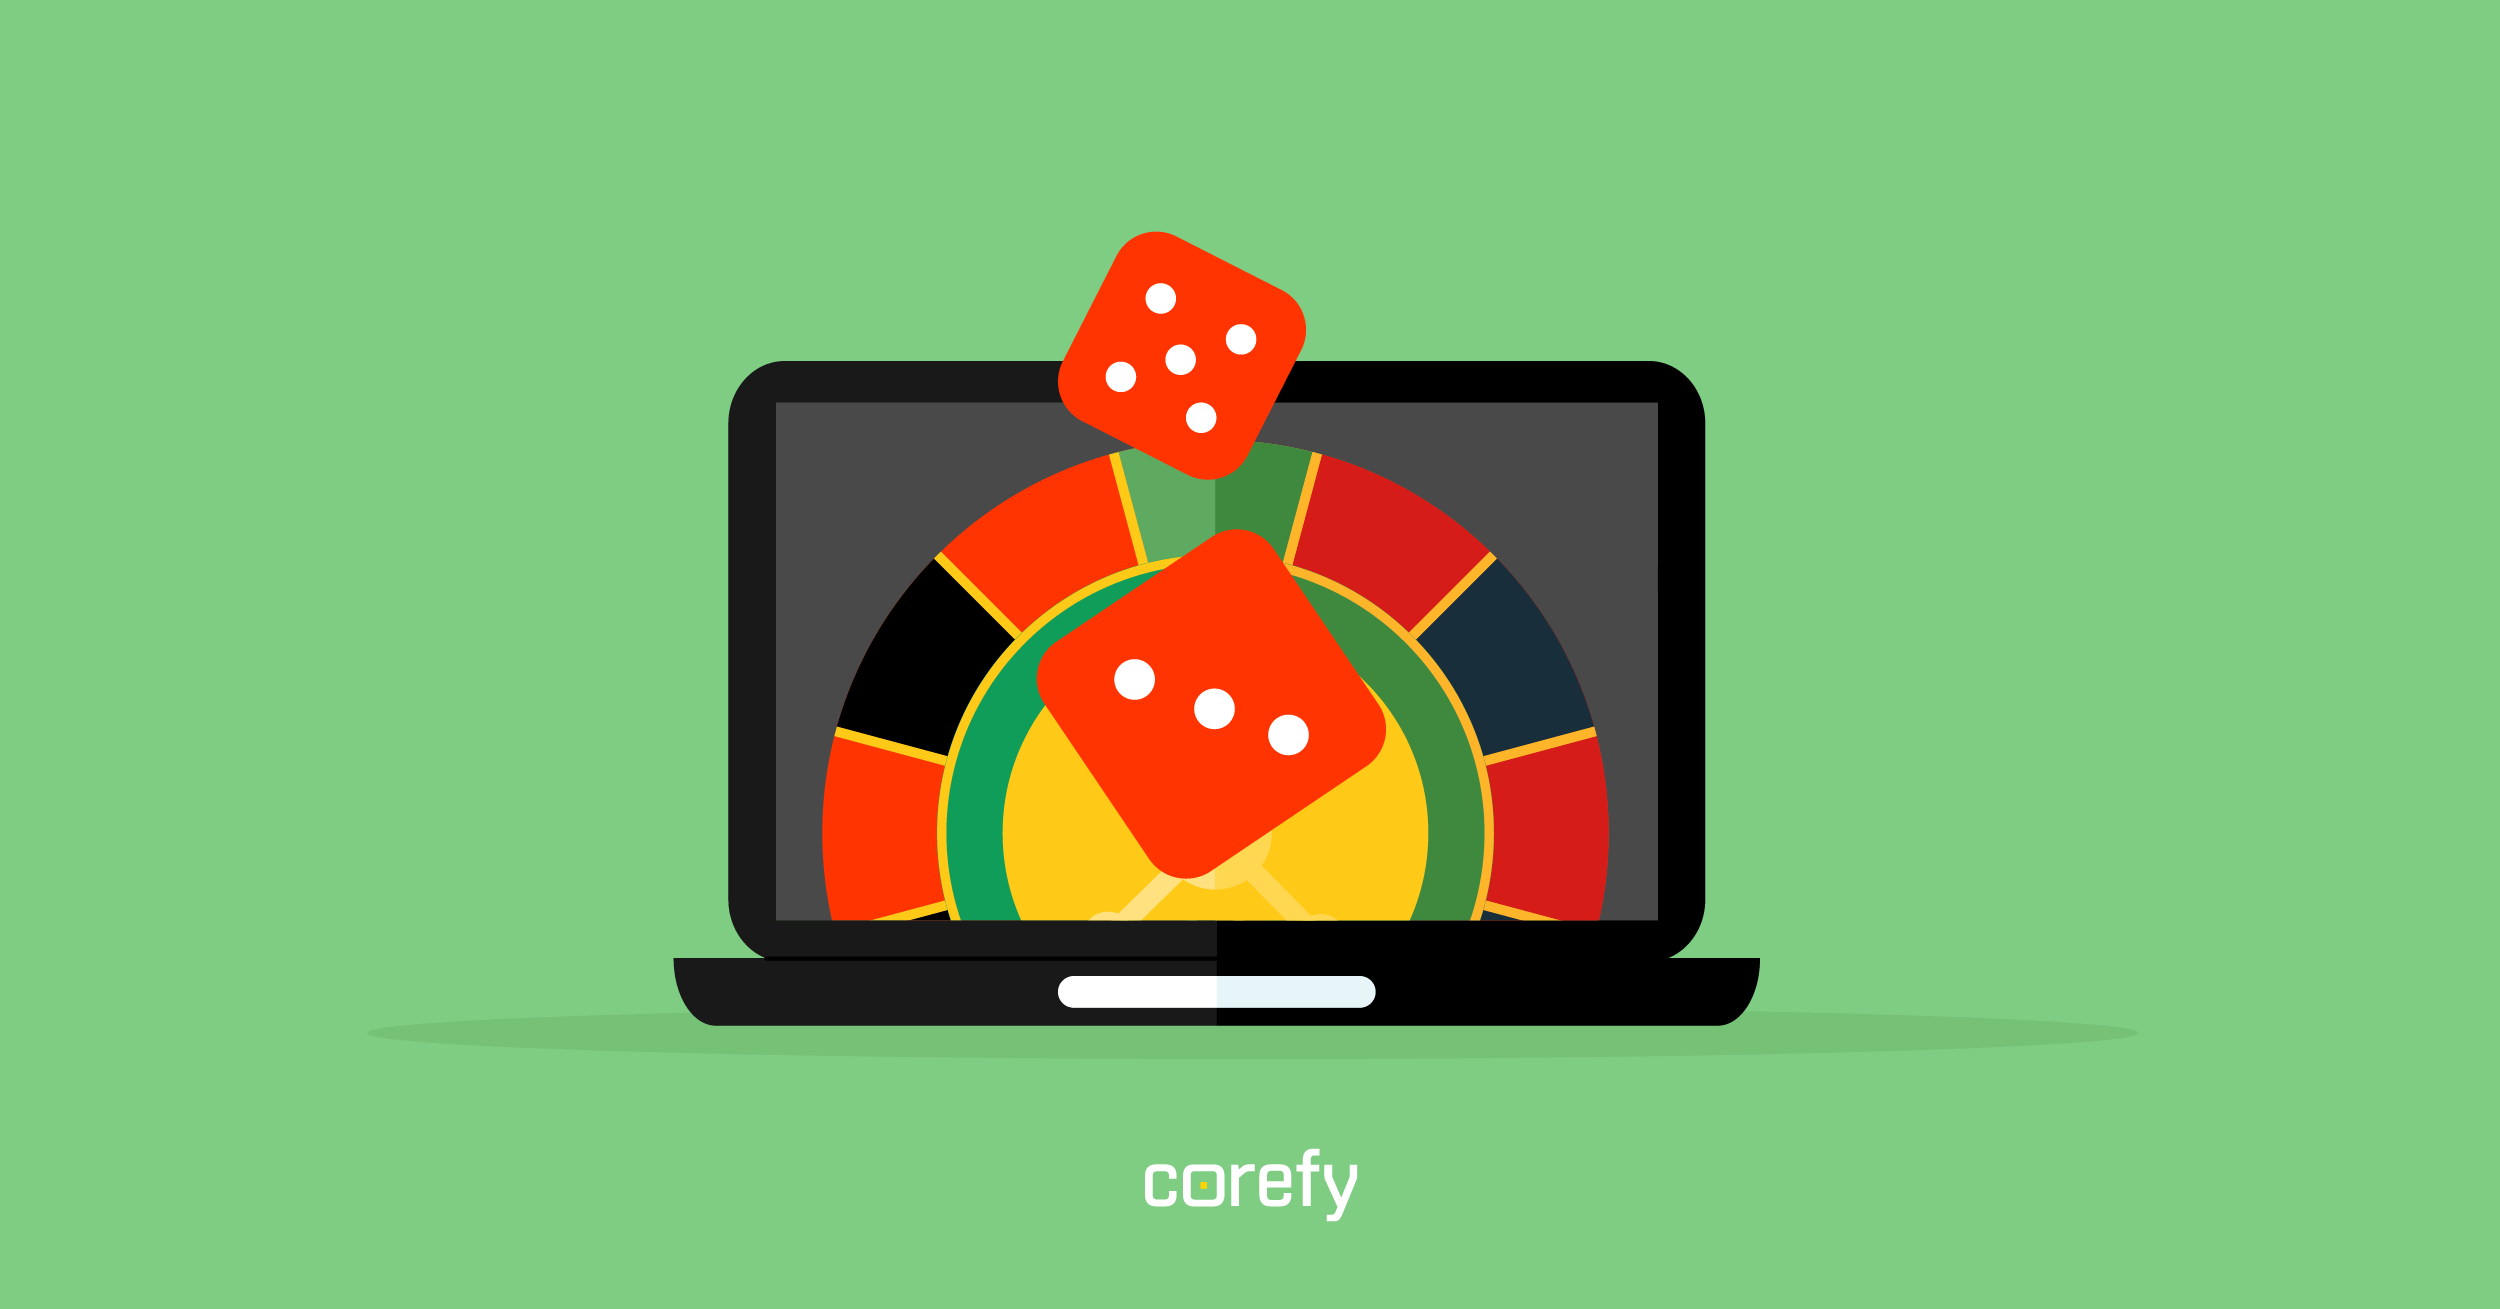 How to start an online gambling business?